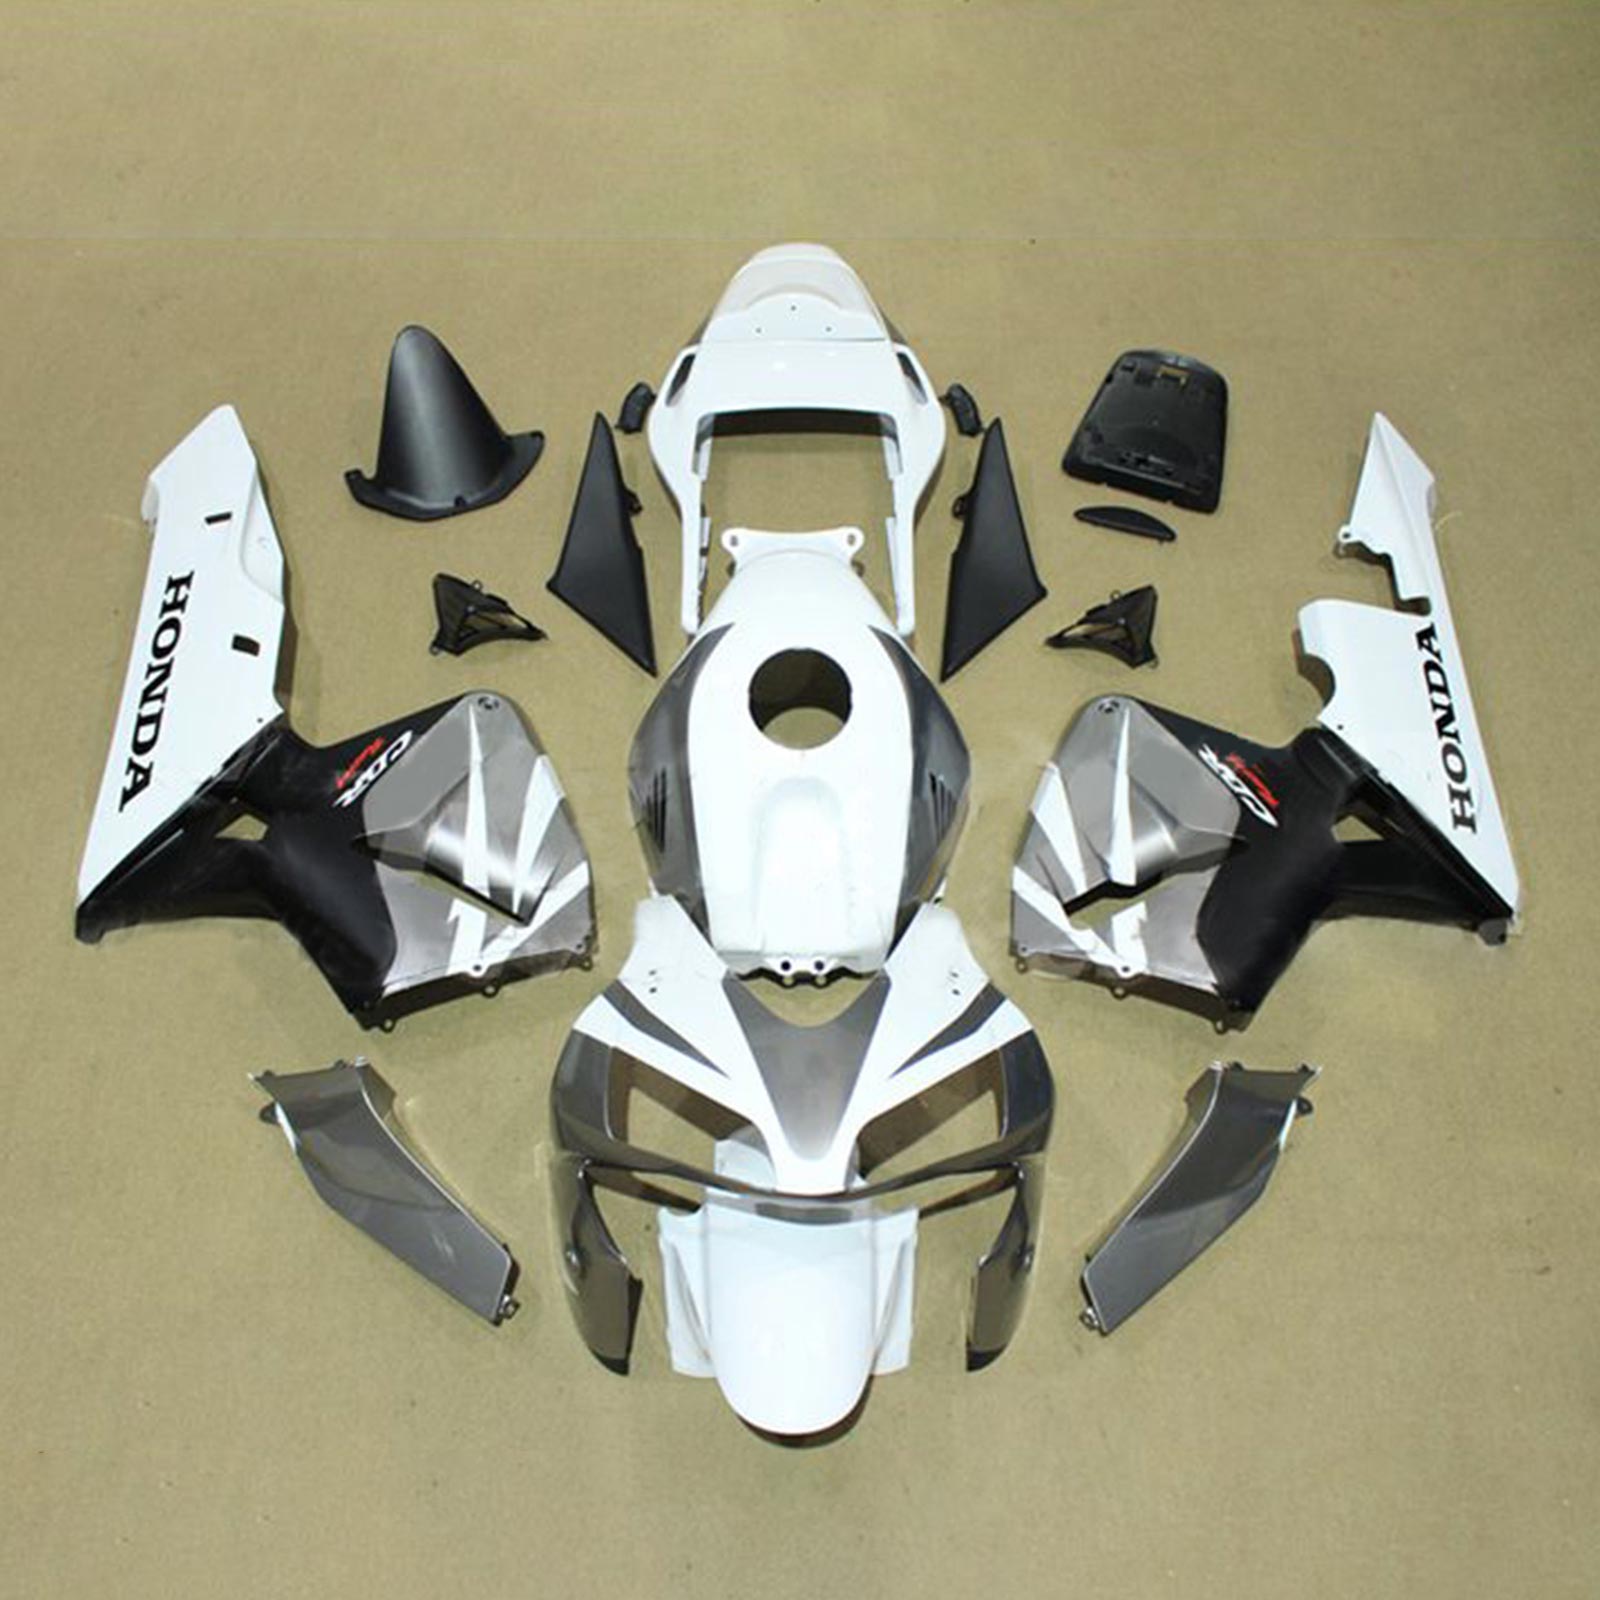 Amotopart Honda CBR600RR 2003-2004 F5 Kit Carénage Carrosserie Plastique ABS